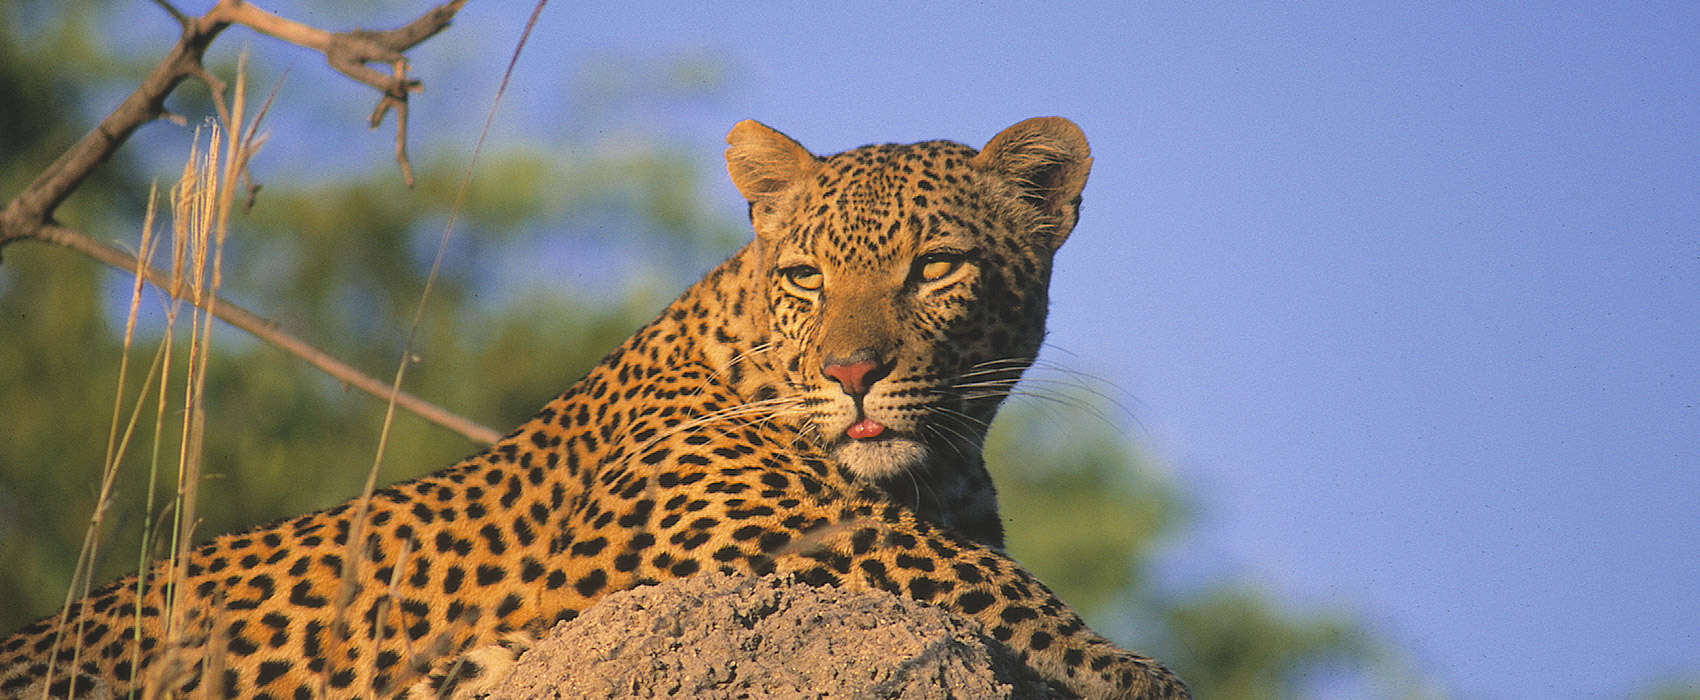 African Kruger National Park Safari leopard